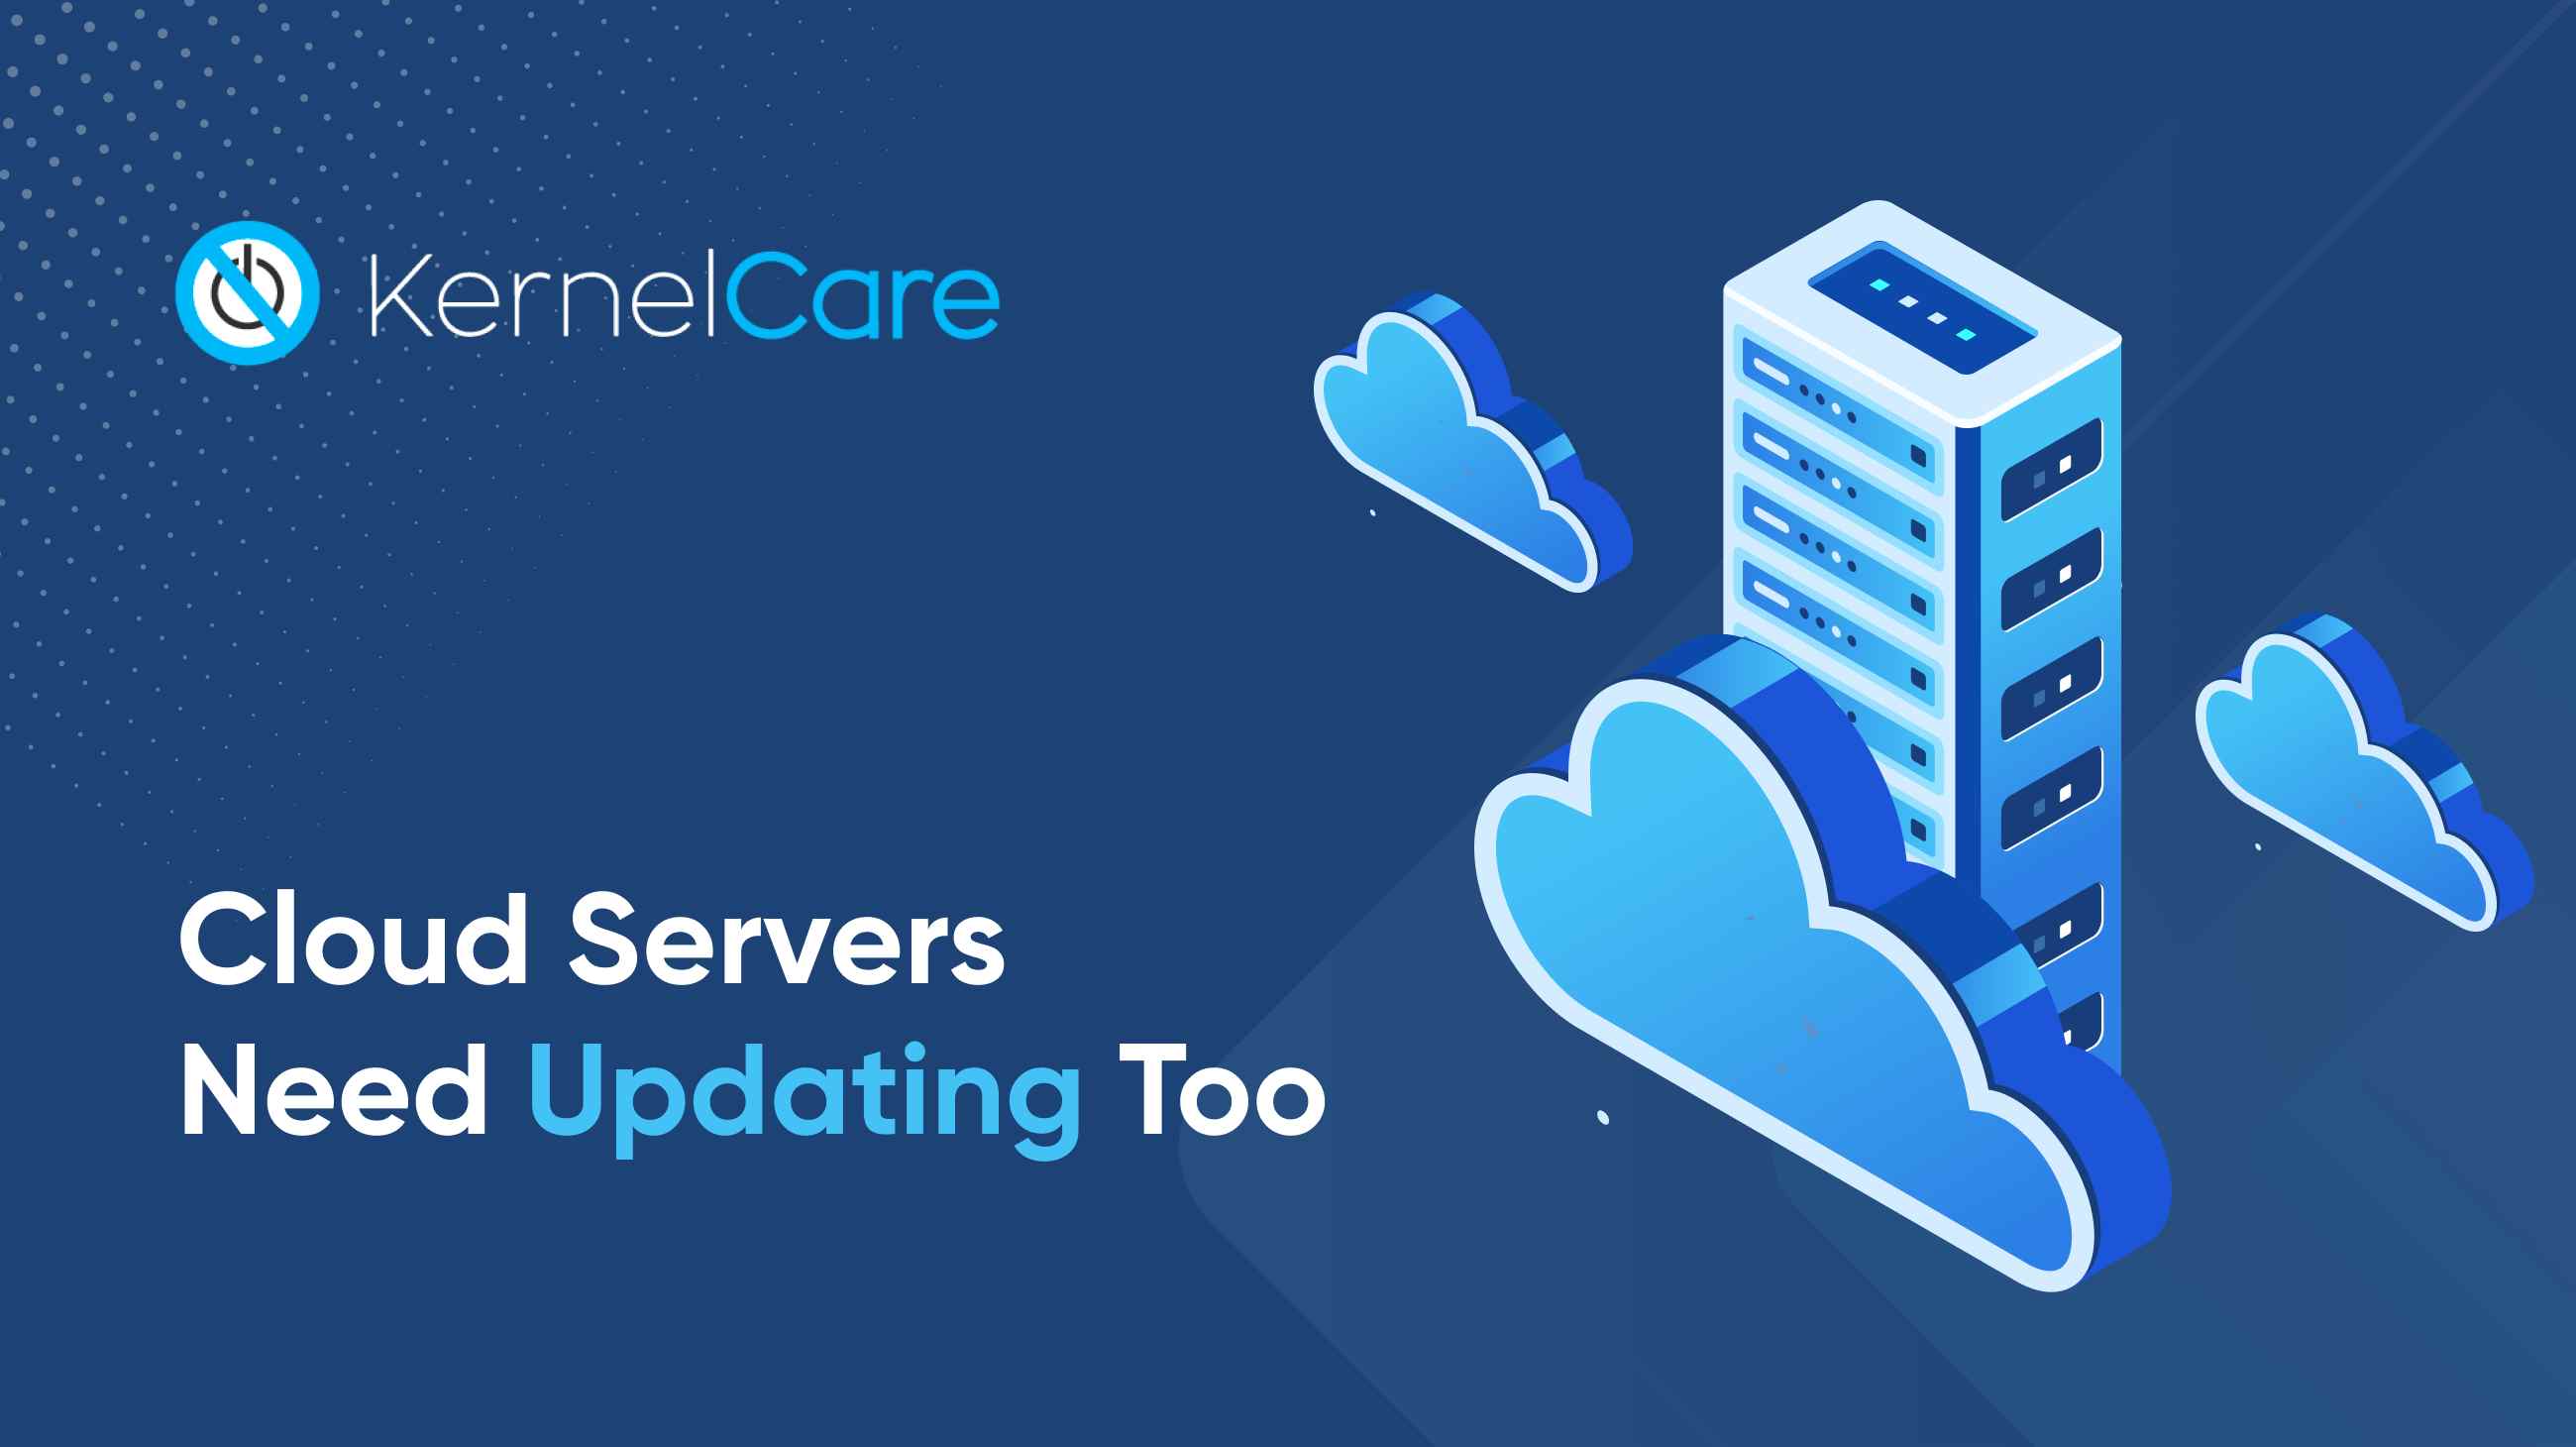 Los servidores en nube también necesitan actualizarse